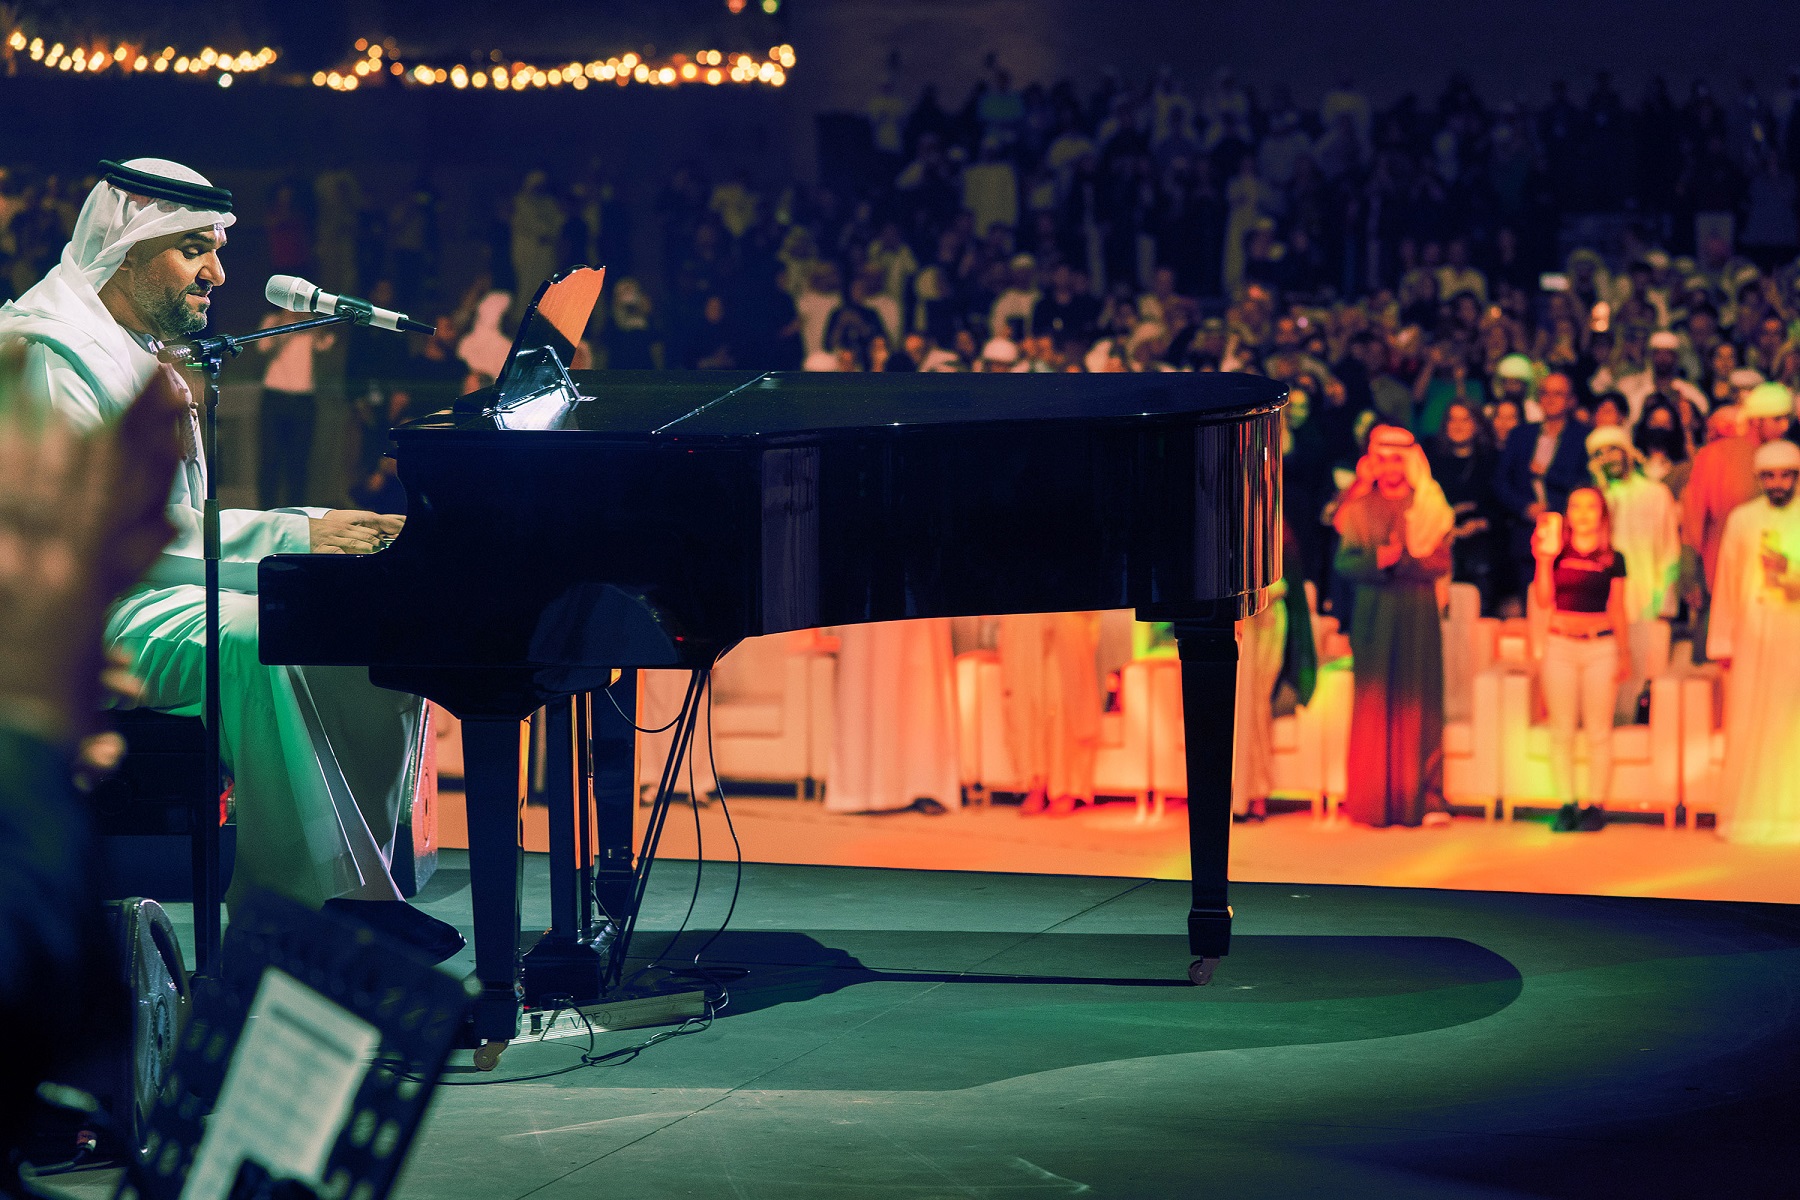 حسين الجسمي يعزف على البيانو في حفله بأبو ظبي